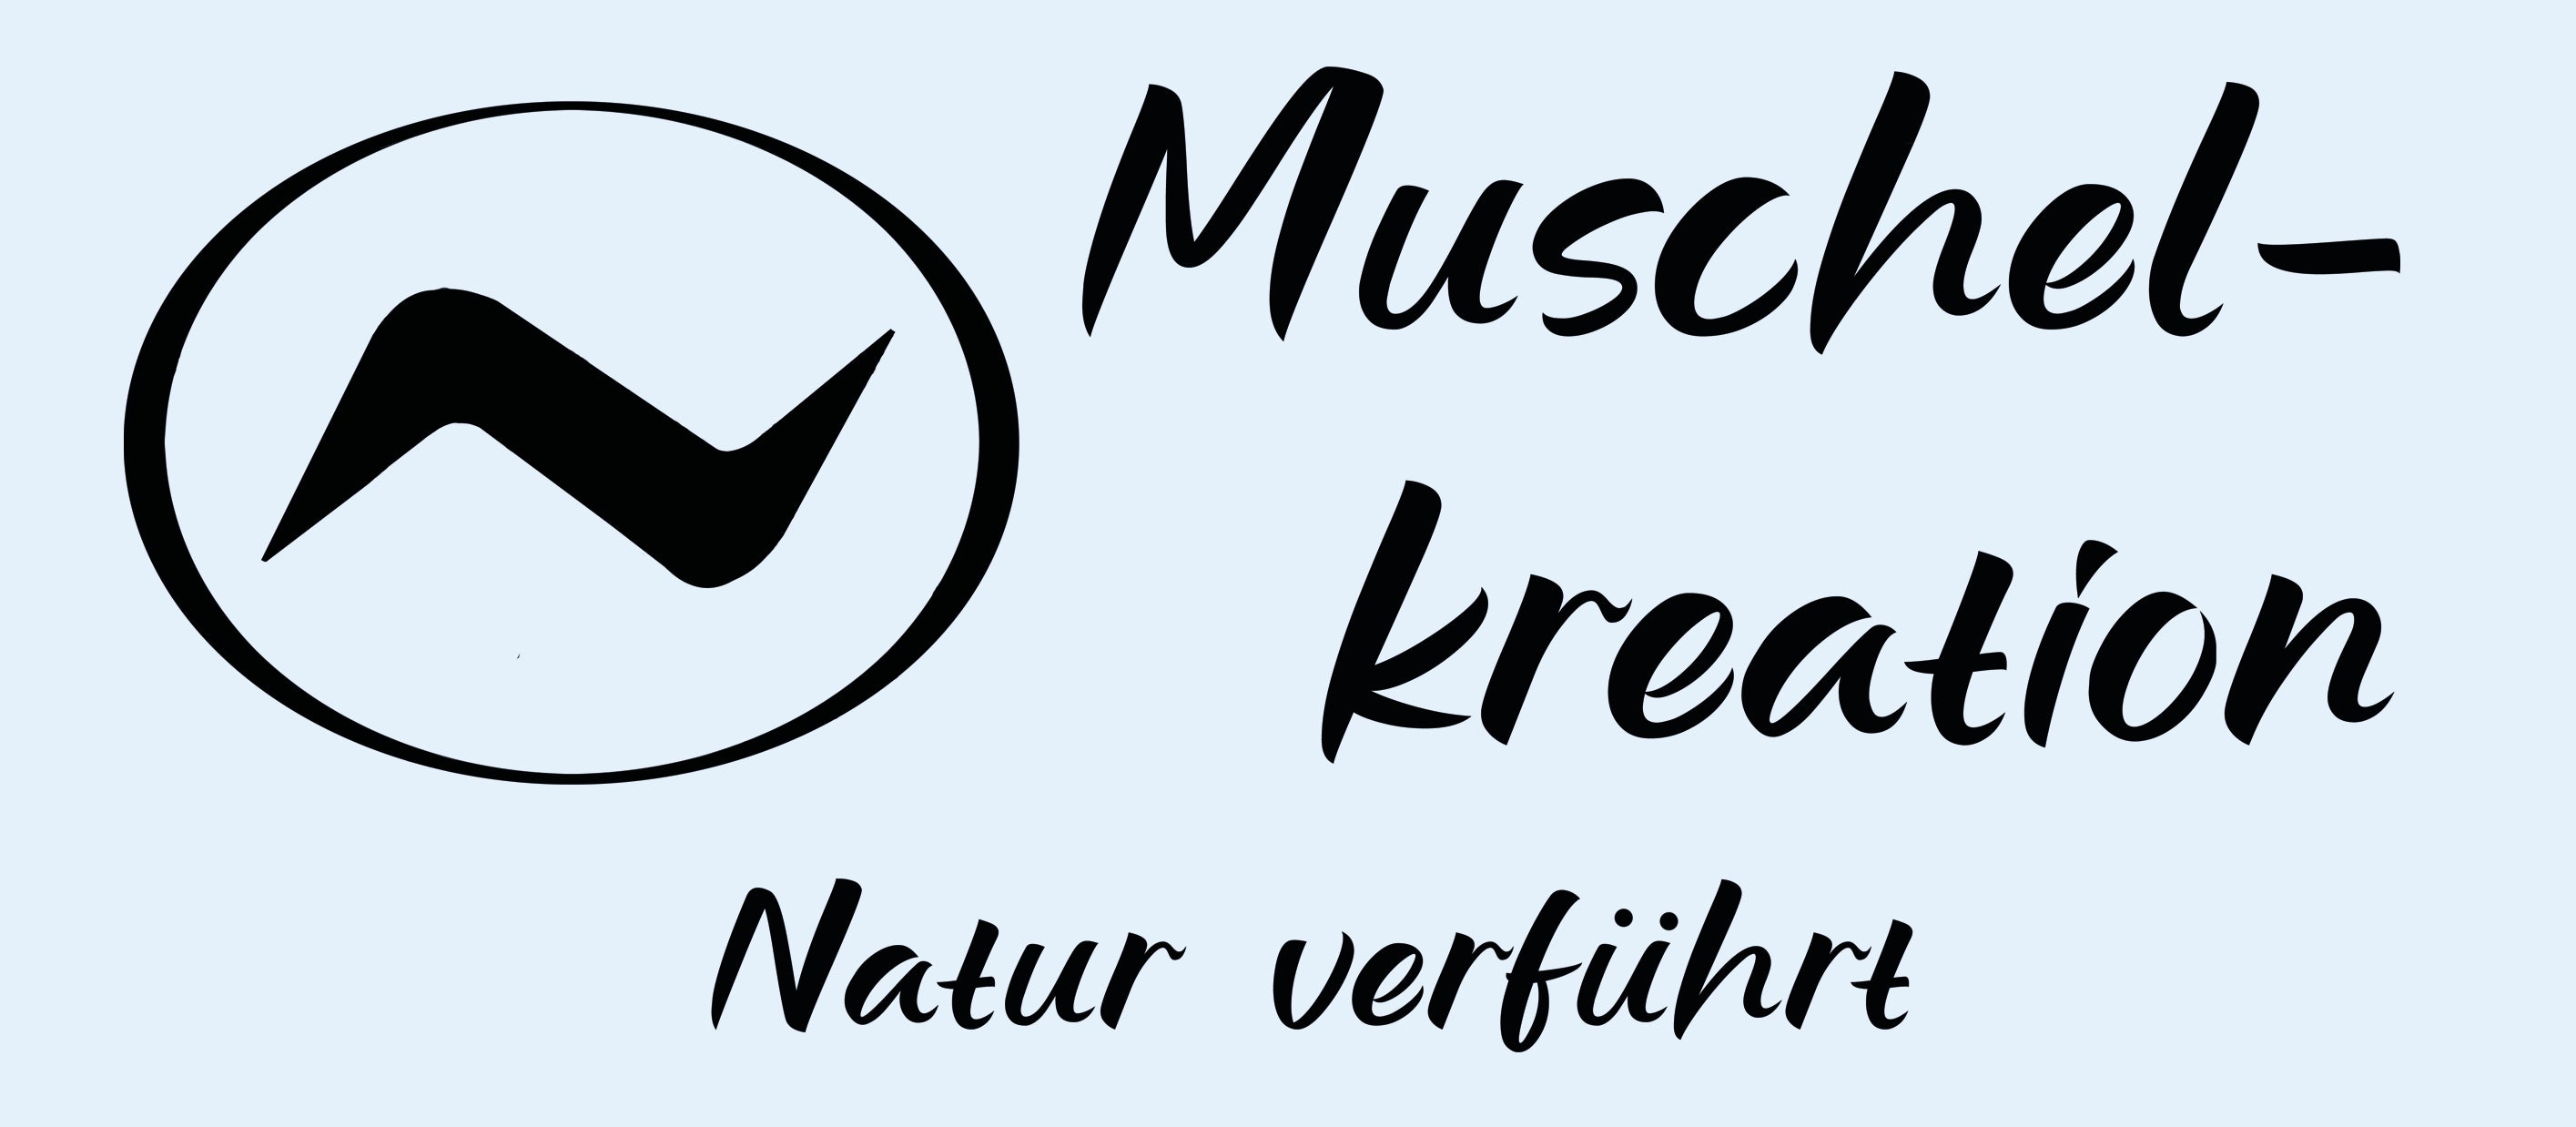 Logo-Muschelkreation-Natur-verfuehrt-Muschelschmuck-in-925er-Silber